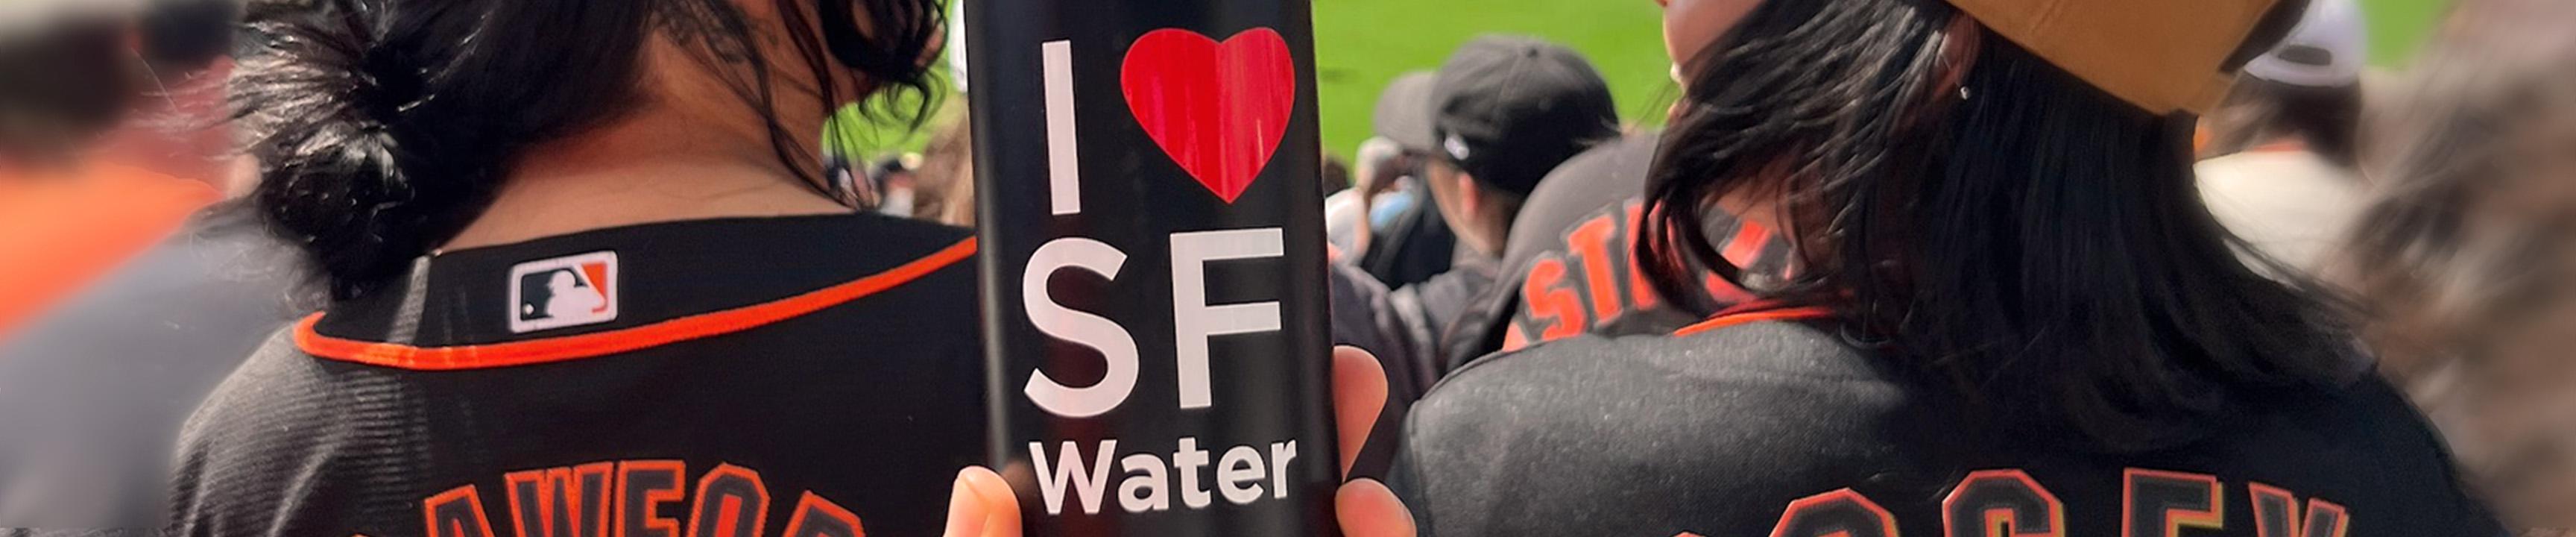 Botella de agua presentada en el juego de los SF Giants